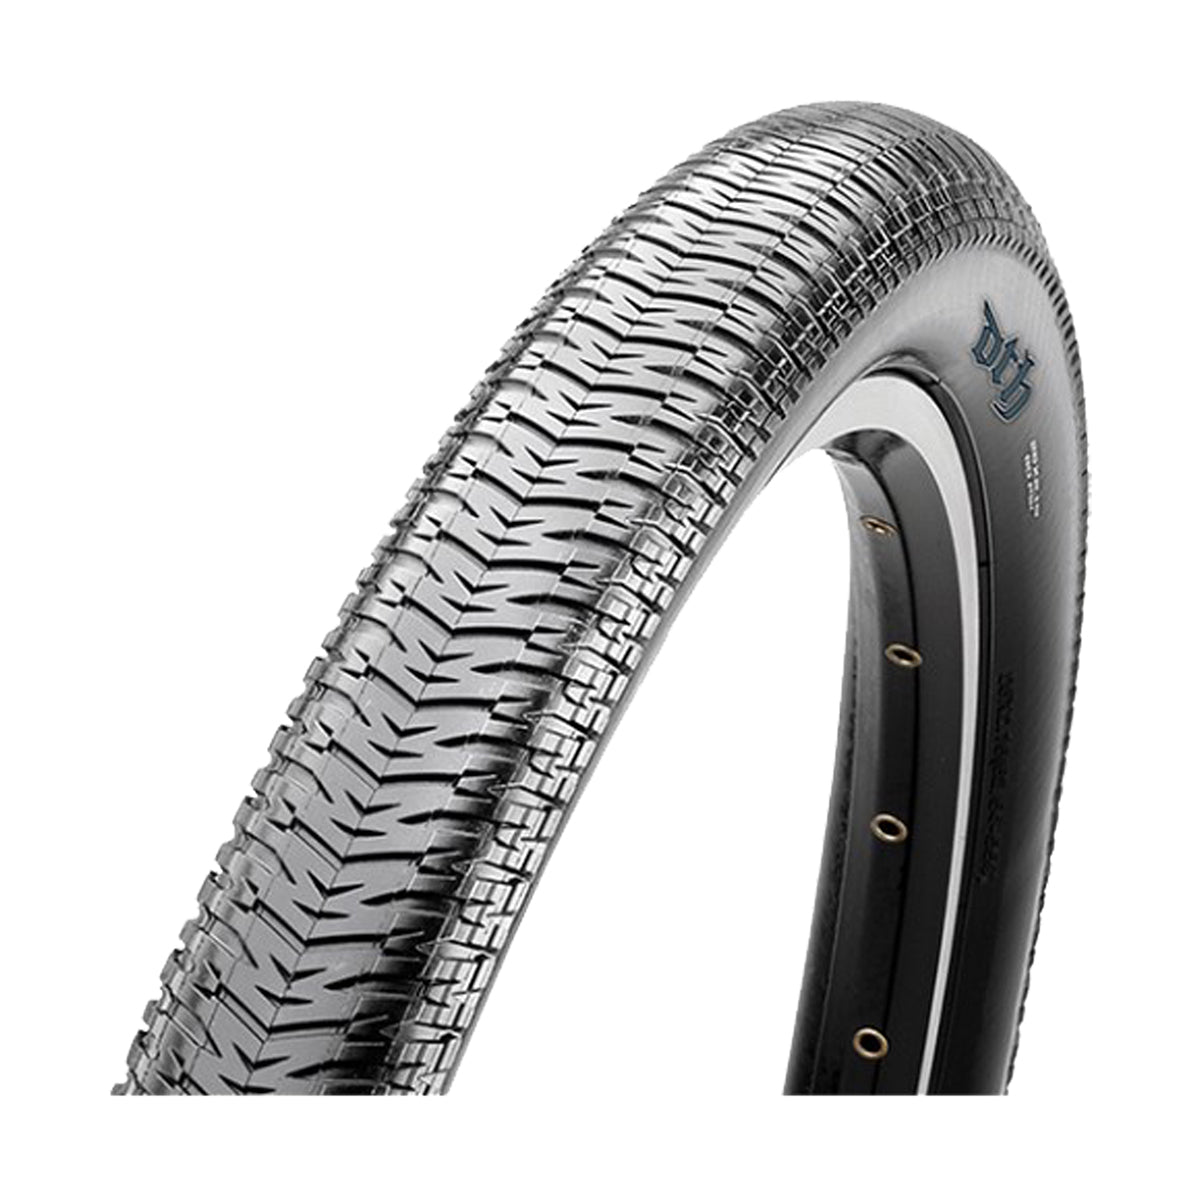 26x2.30 Maxxis DTH Tire - All Black